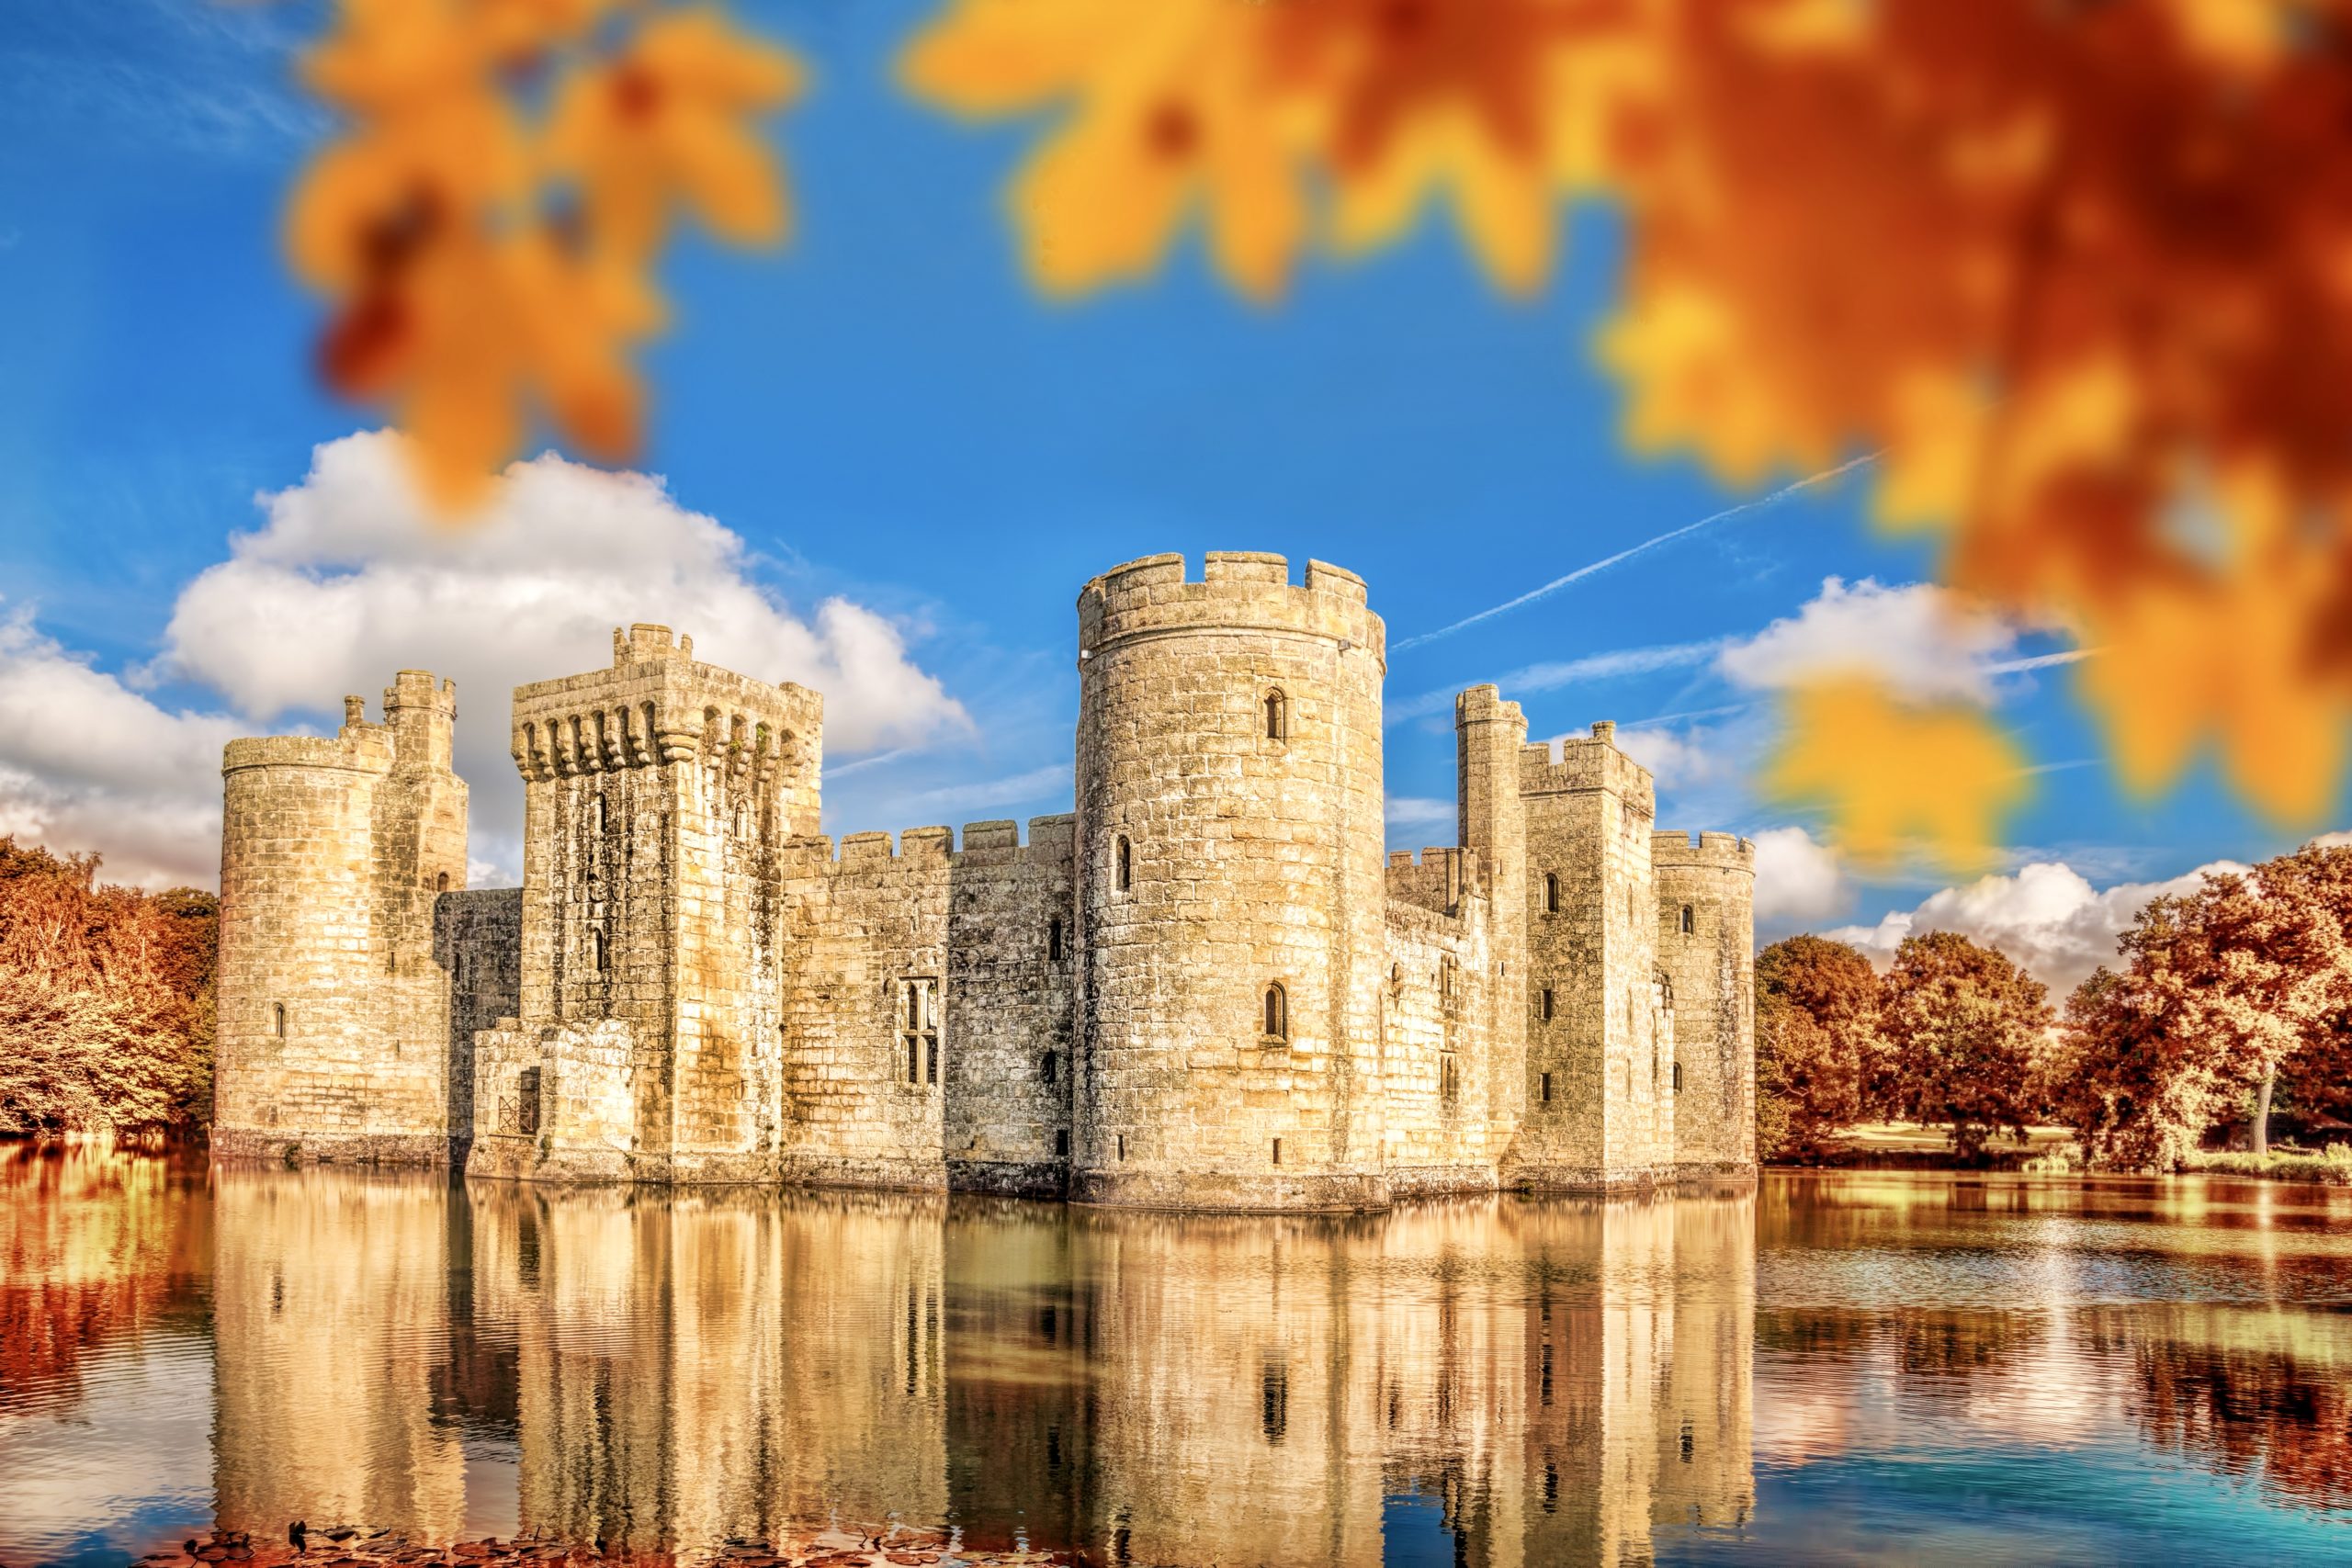 castle tour england